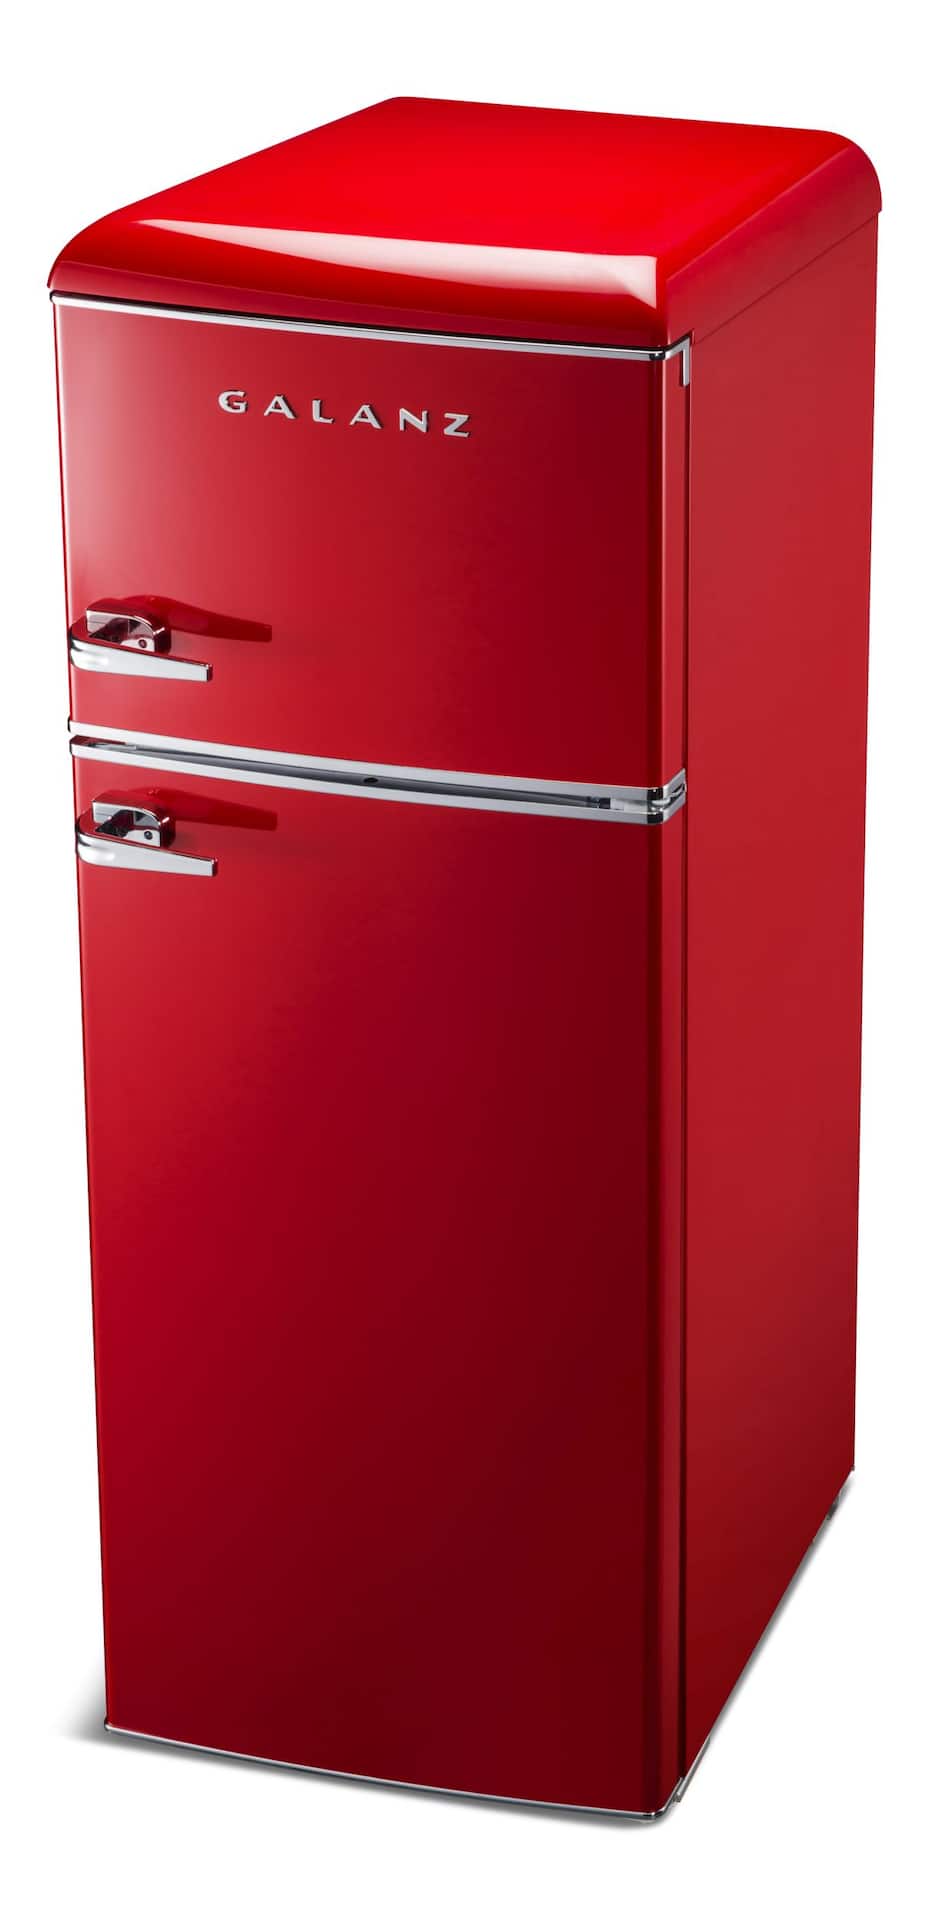 Quel est le meilleur réfrigérateur rétro pour votre cuisine?